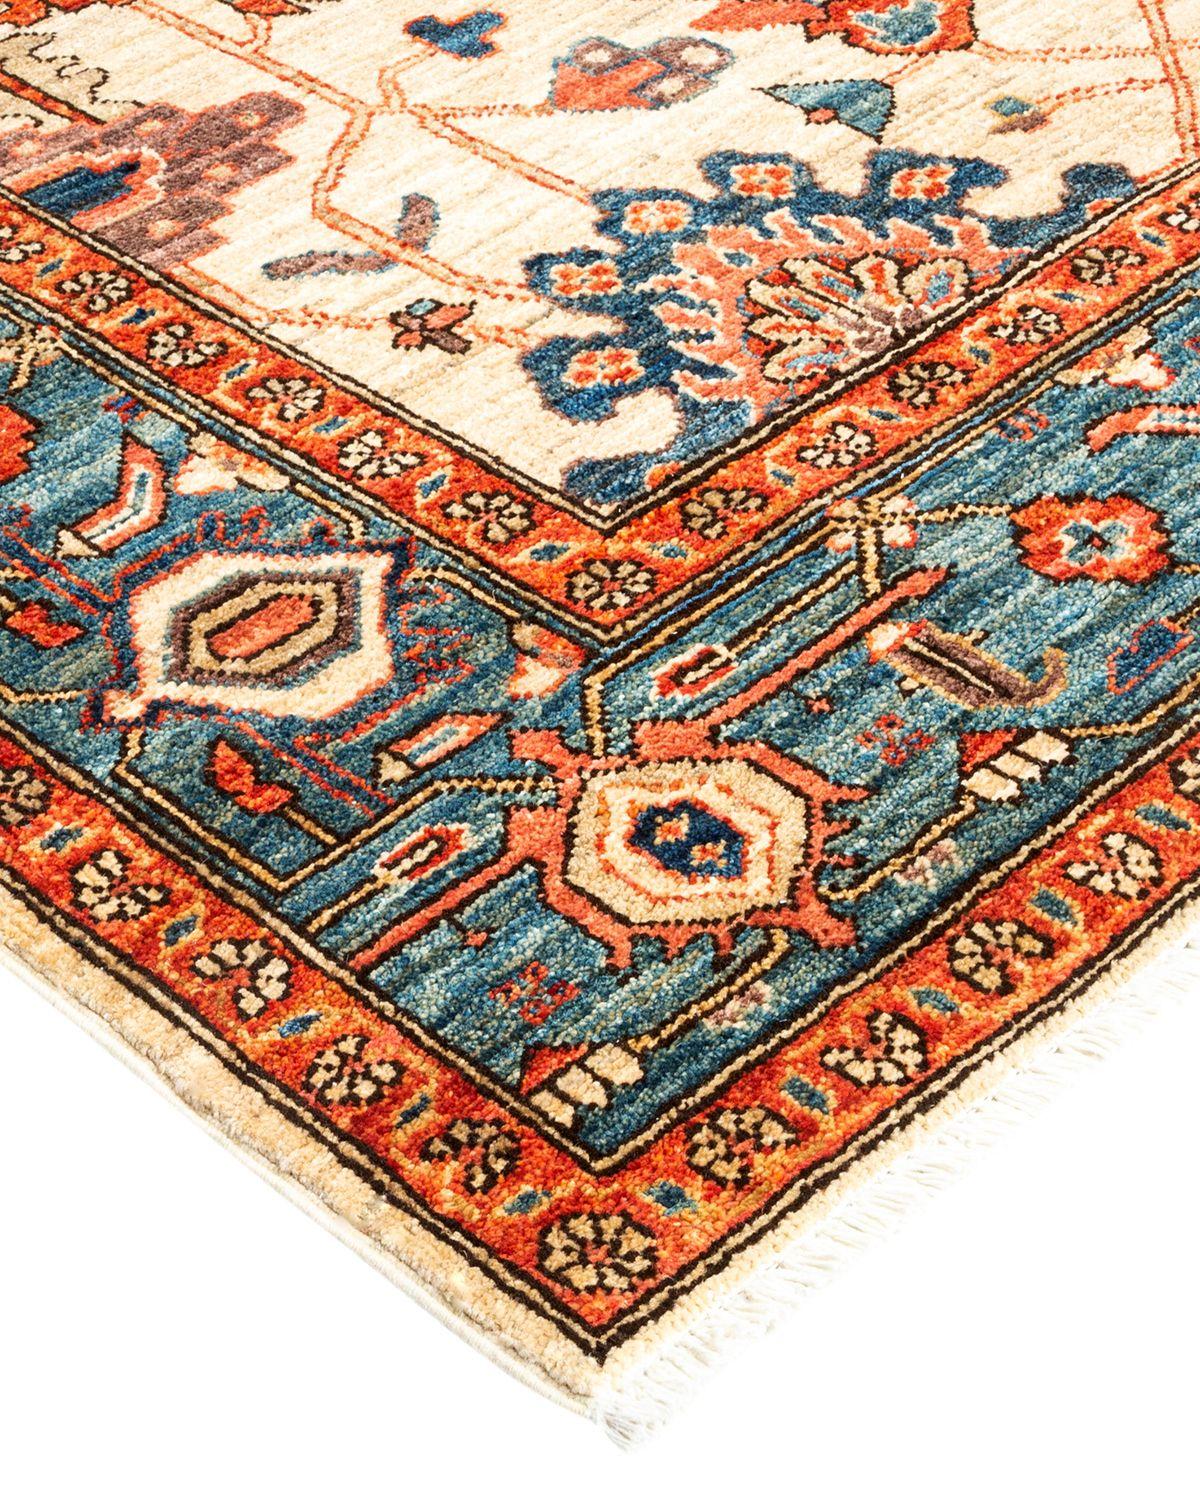 La riche tradition textile de l'Afrique de l'Ouest a inspiré la collection Tribal de tapis noués à la main. Incorporant un mélange de motifs géométriques, dans des palettes allant de la terre à la vivacité, ces tapis apportent un sentiment d'énergie